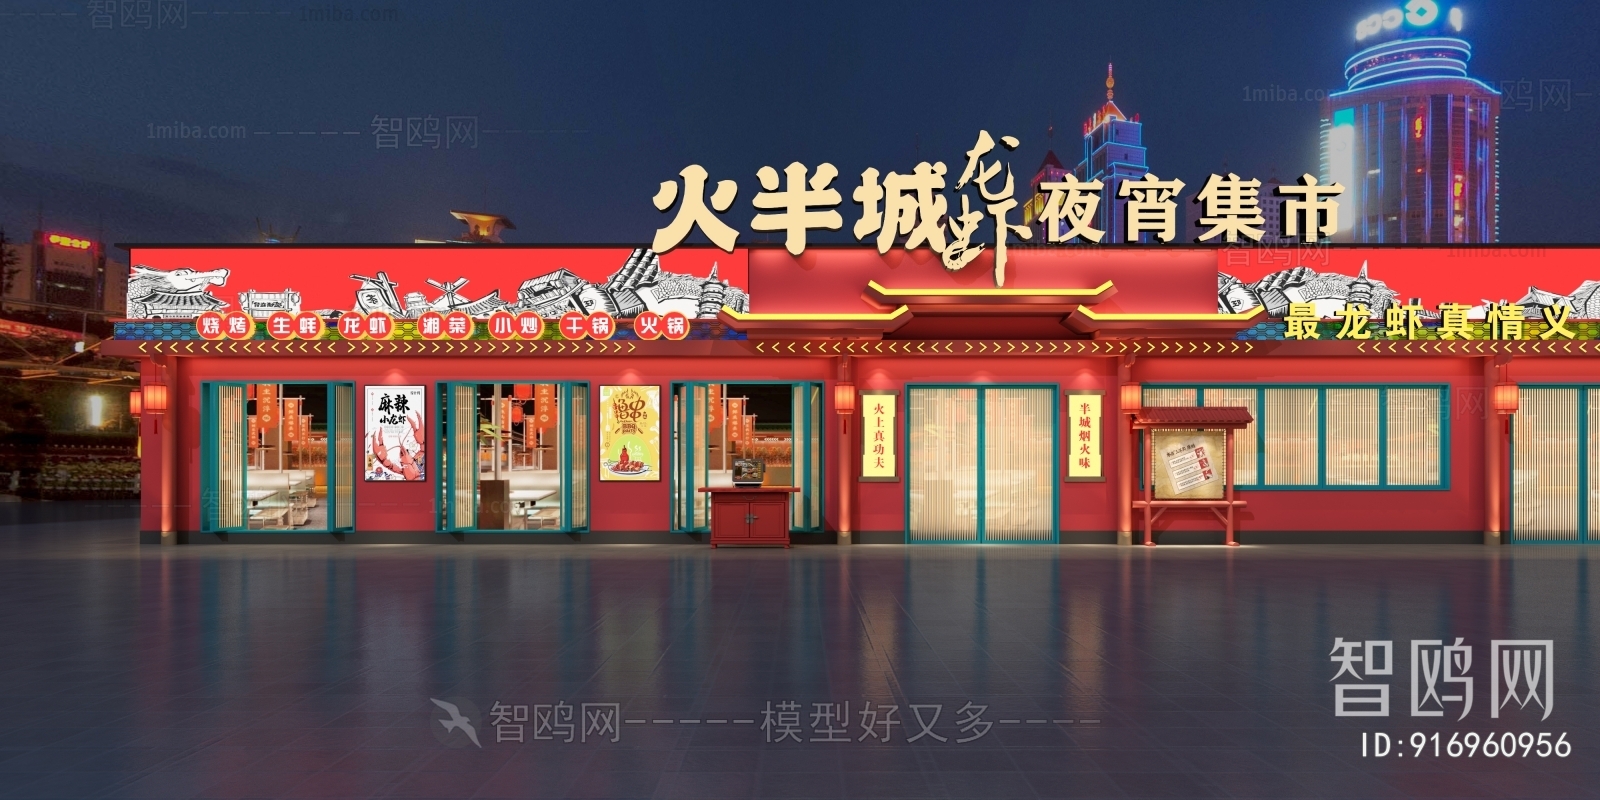 新中式国潮中餐厅门面门头